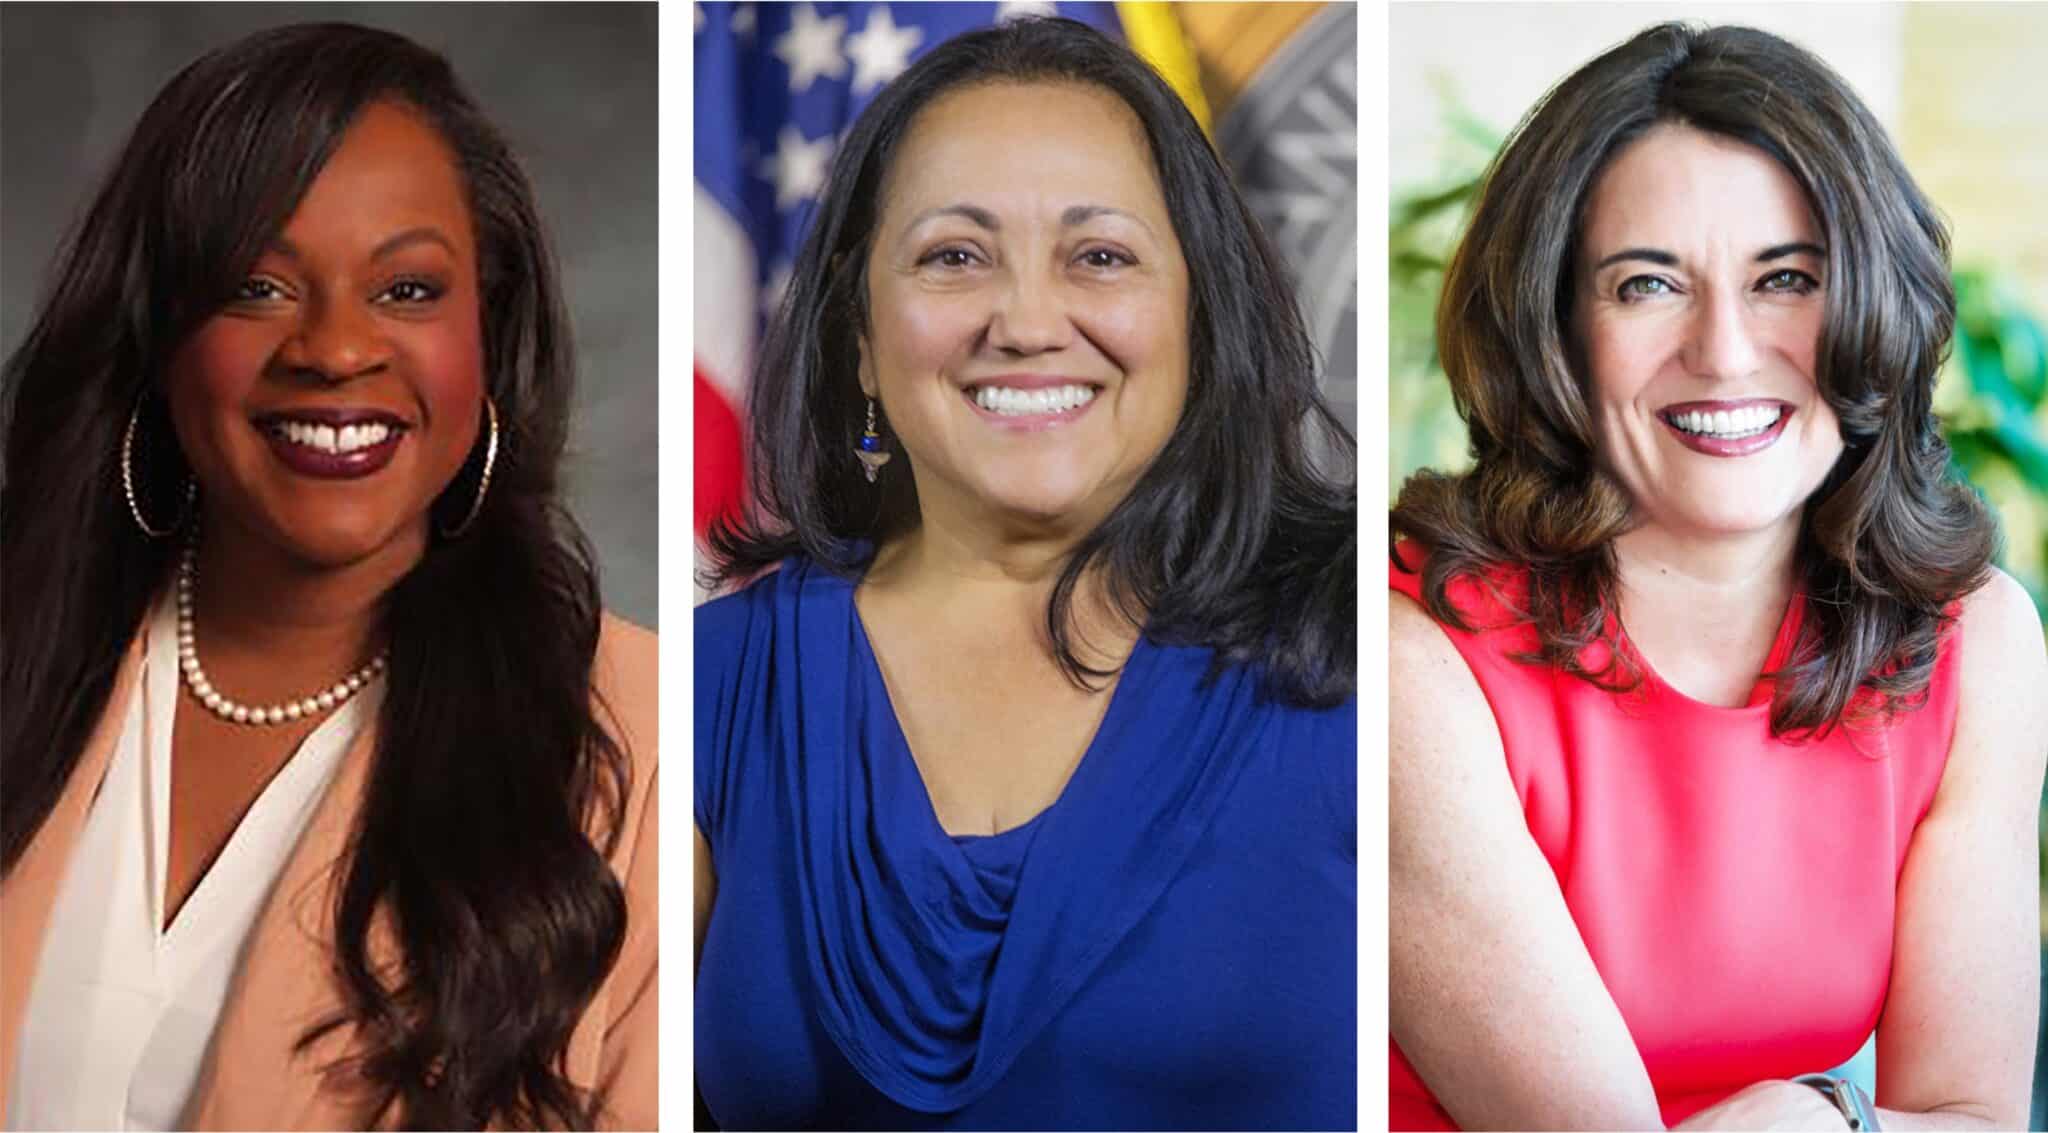 Women lead Denver mayor's race in fundraising